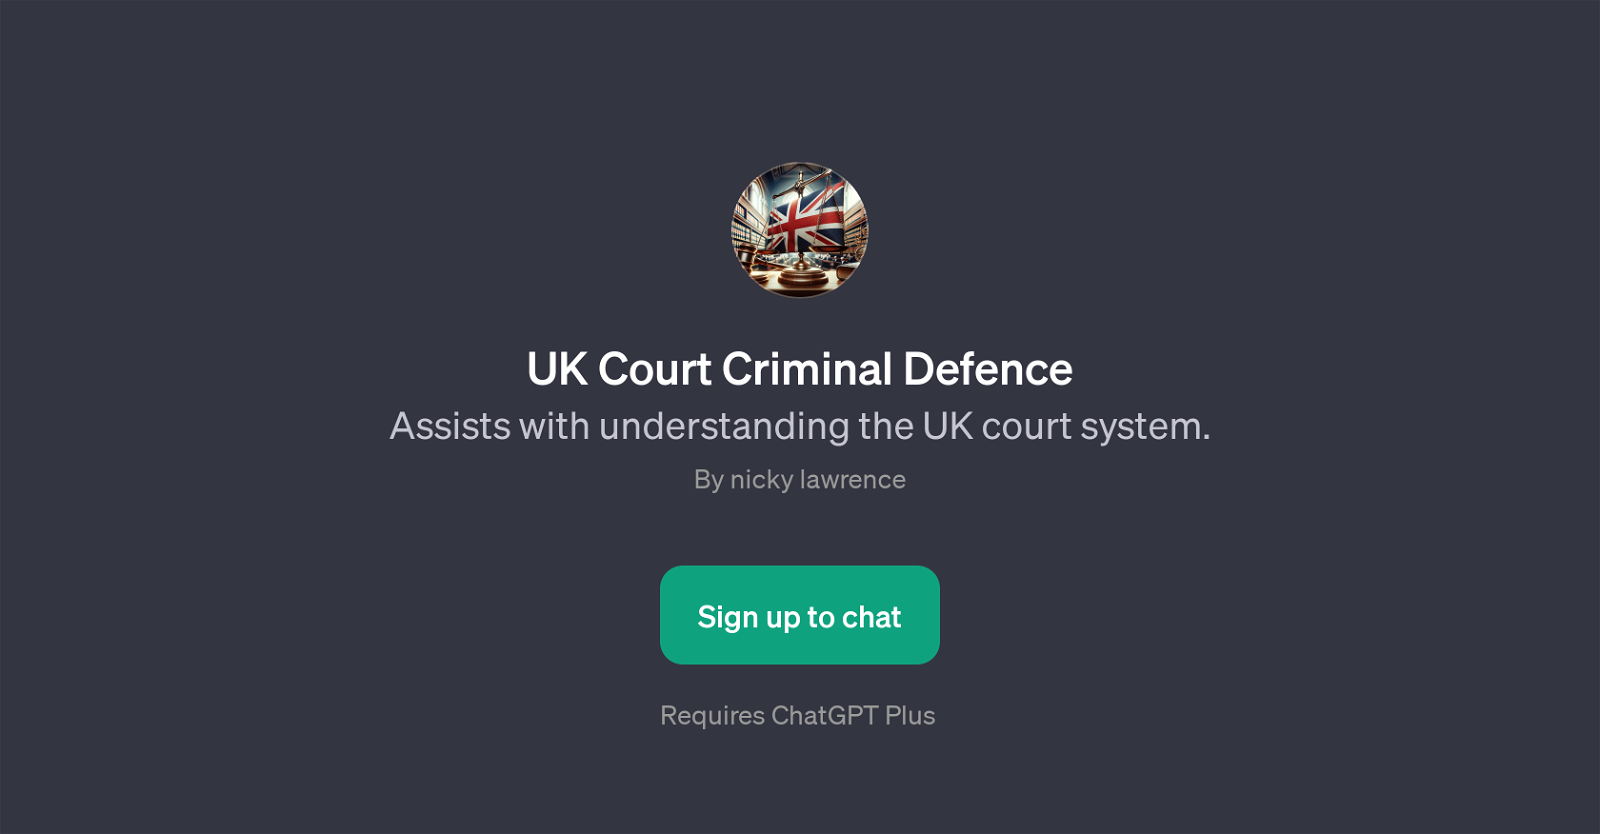 UK Court Criminal Defence website